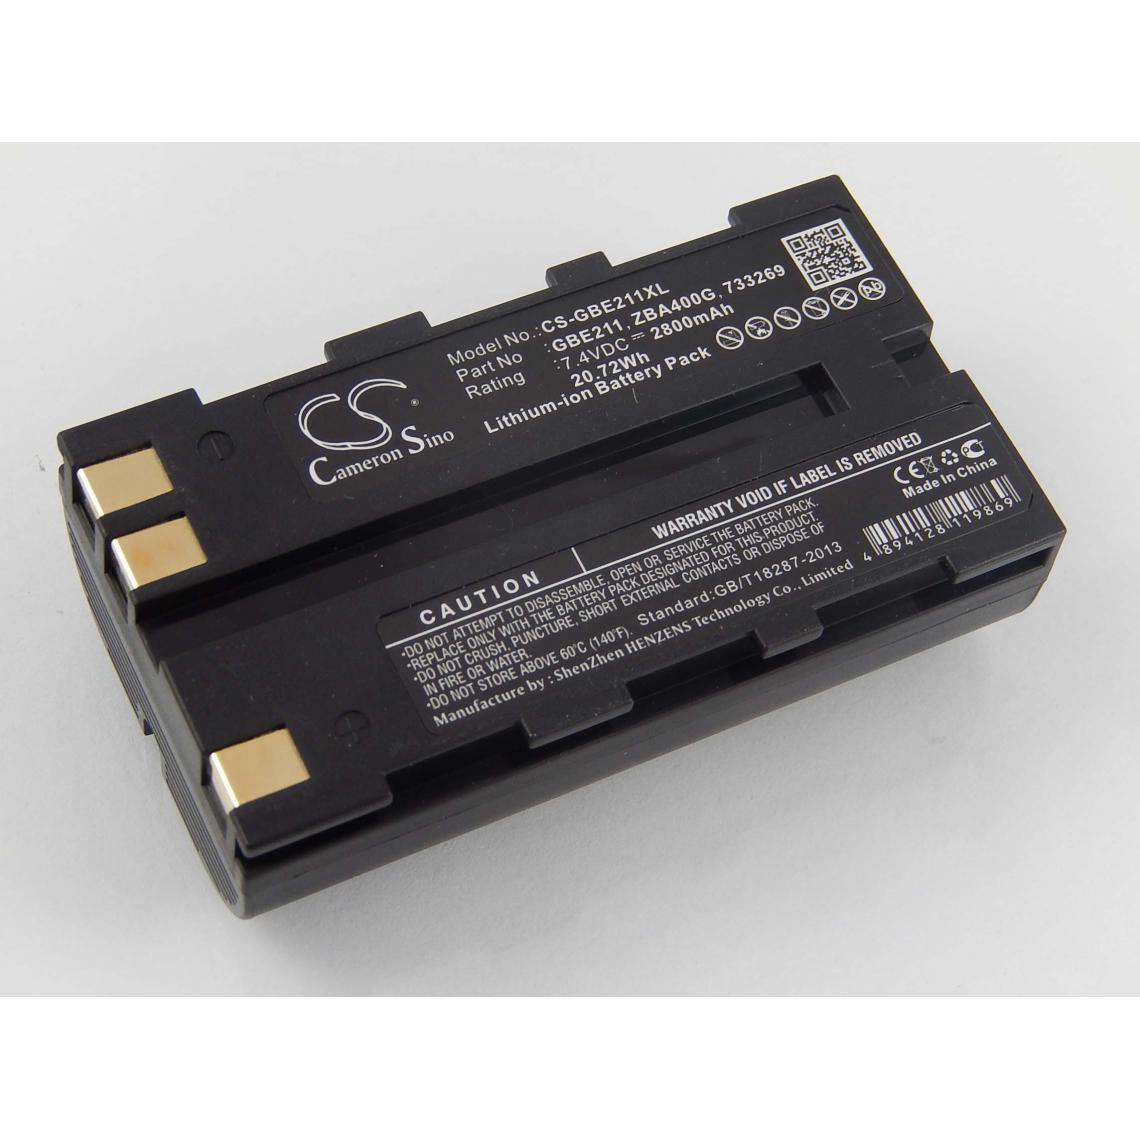 Vhbw - vhbw Batterie remplacement pour Geomax ZBA200, ZBA400 pour dispositif de mesure laser, outil de mesure (2800mAh, 7,4V, Li-ion) - Piles rechargeables